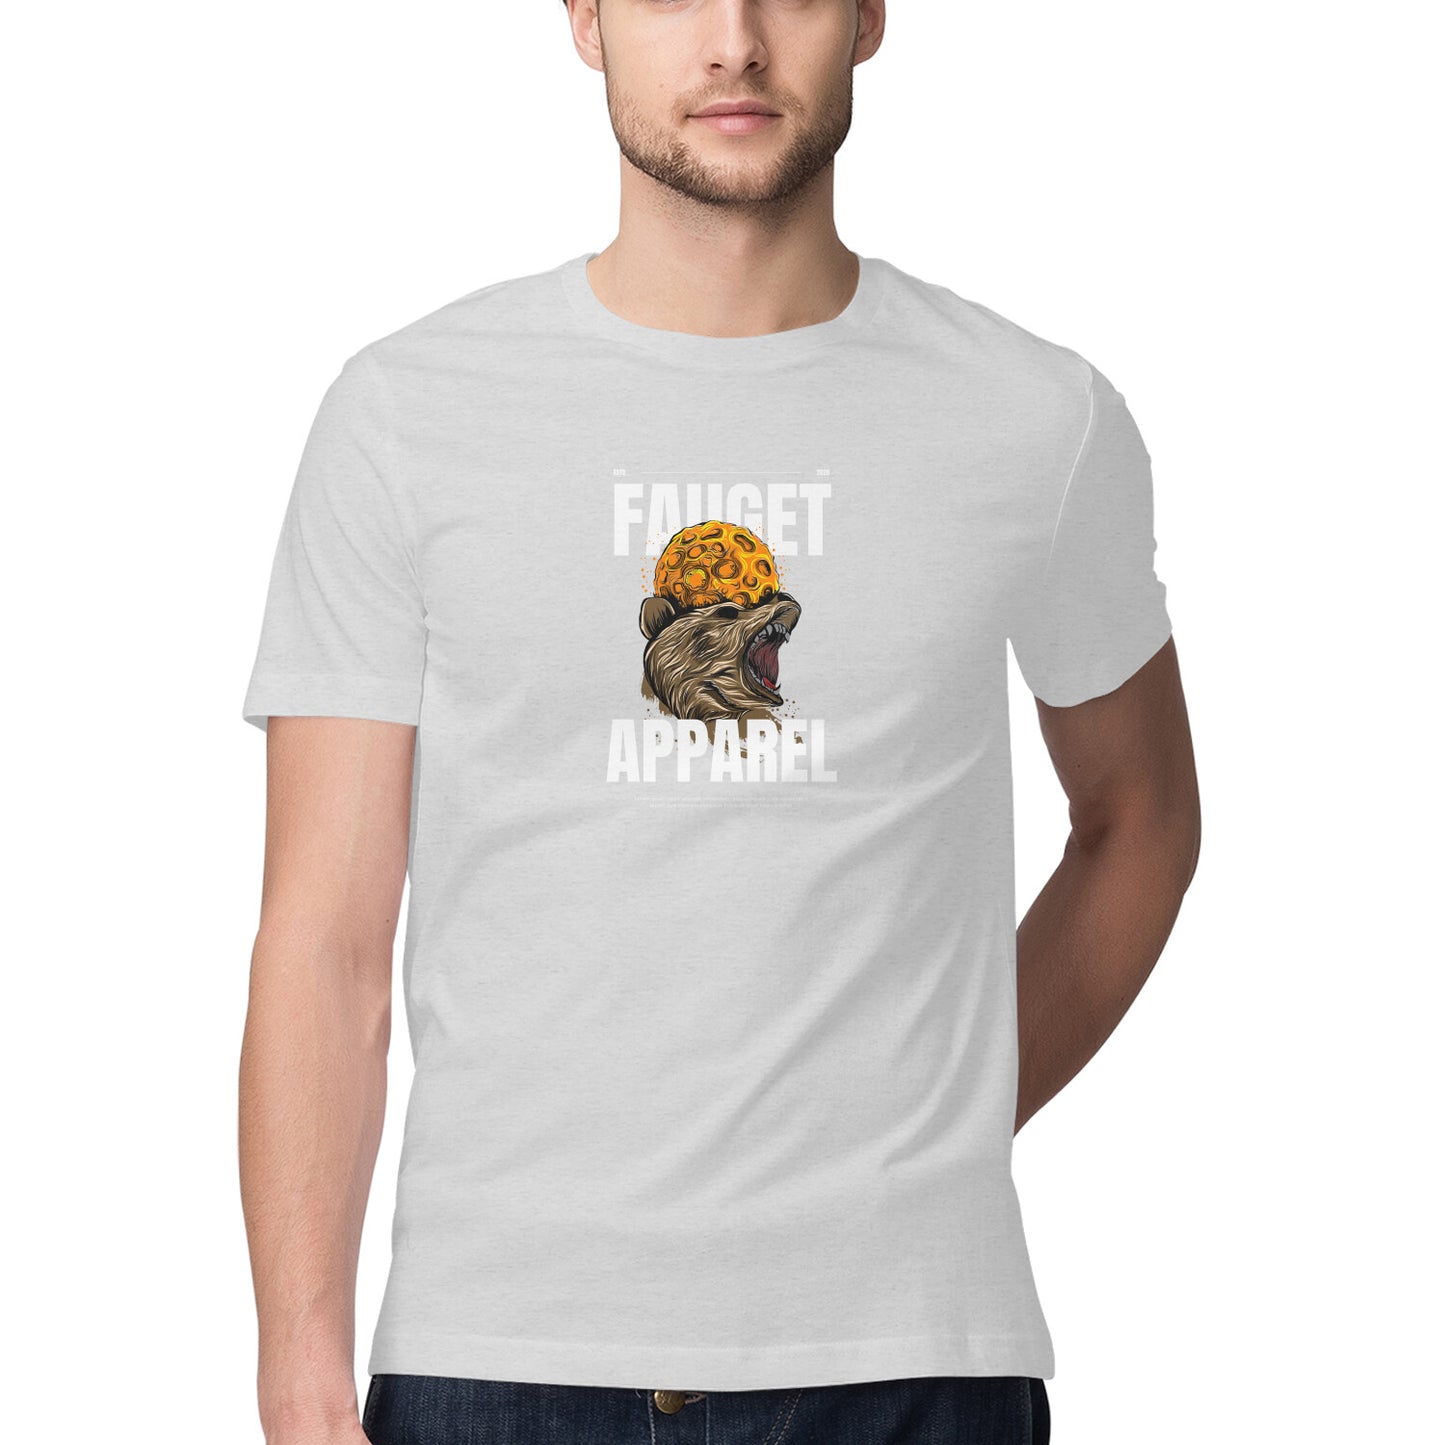 Fauget Apparel - Sleek Design T-shirt - Men